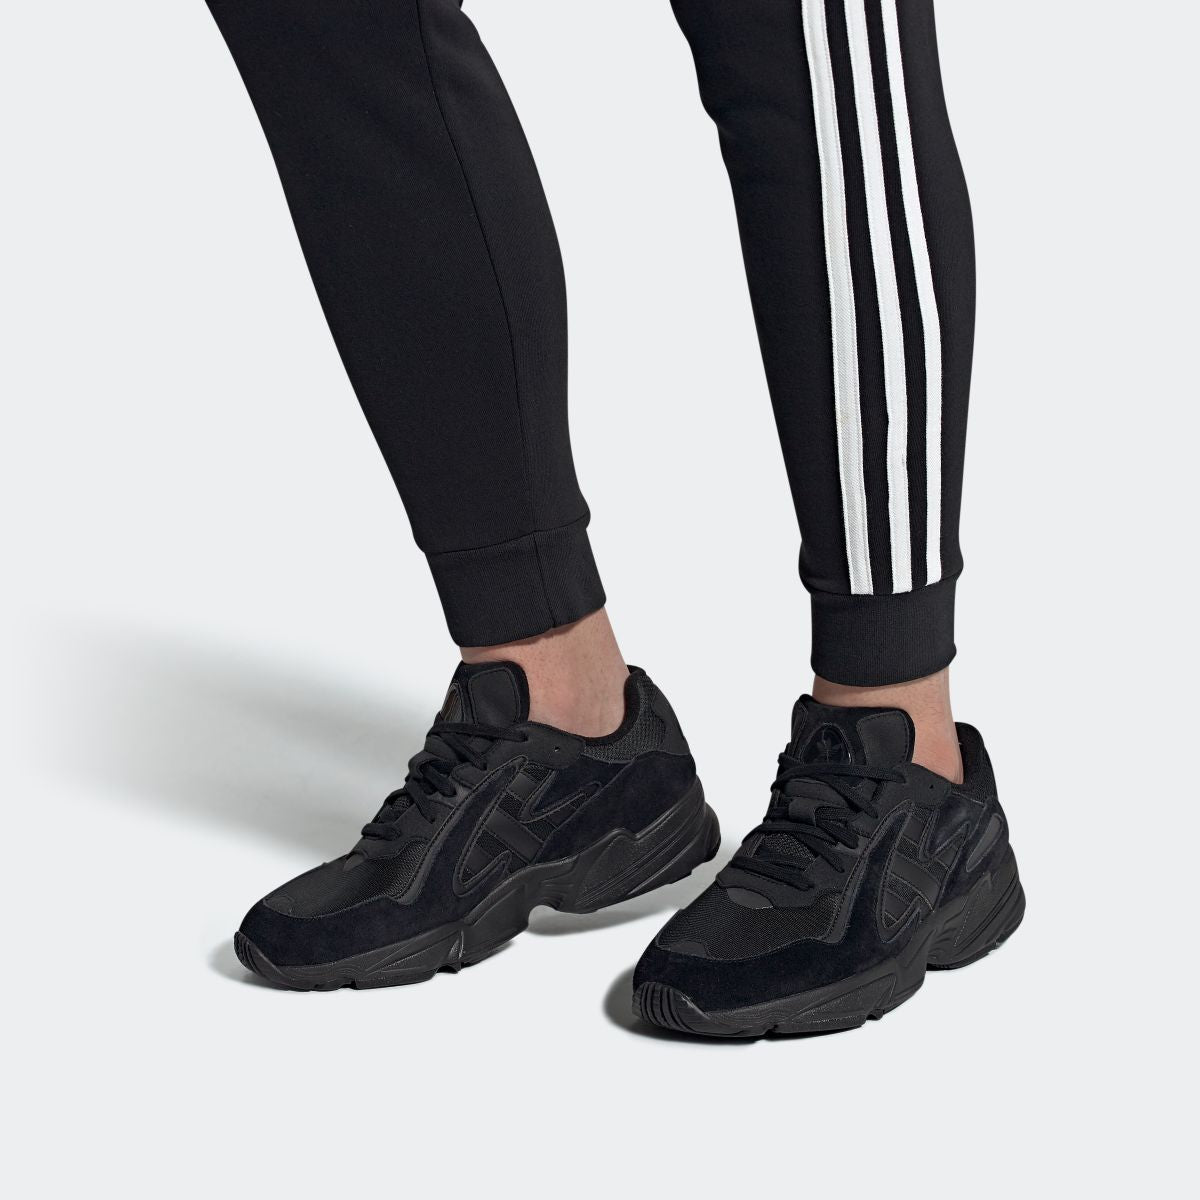 adidas Yung-96 Chasm Black EE7239 | LTD Sneakers \u0026 Wear